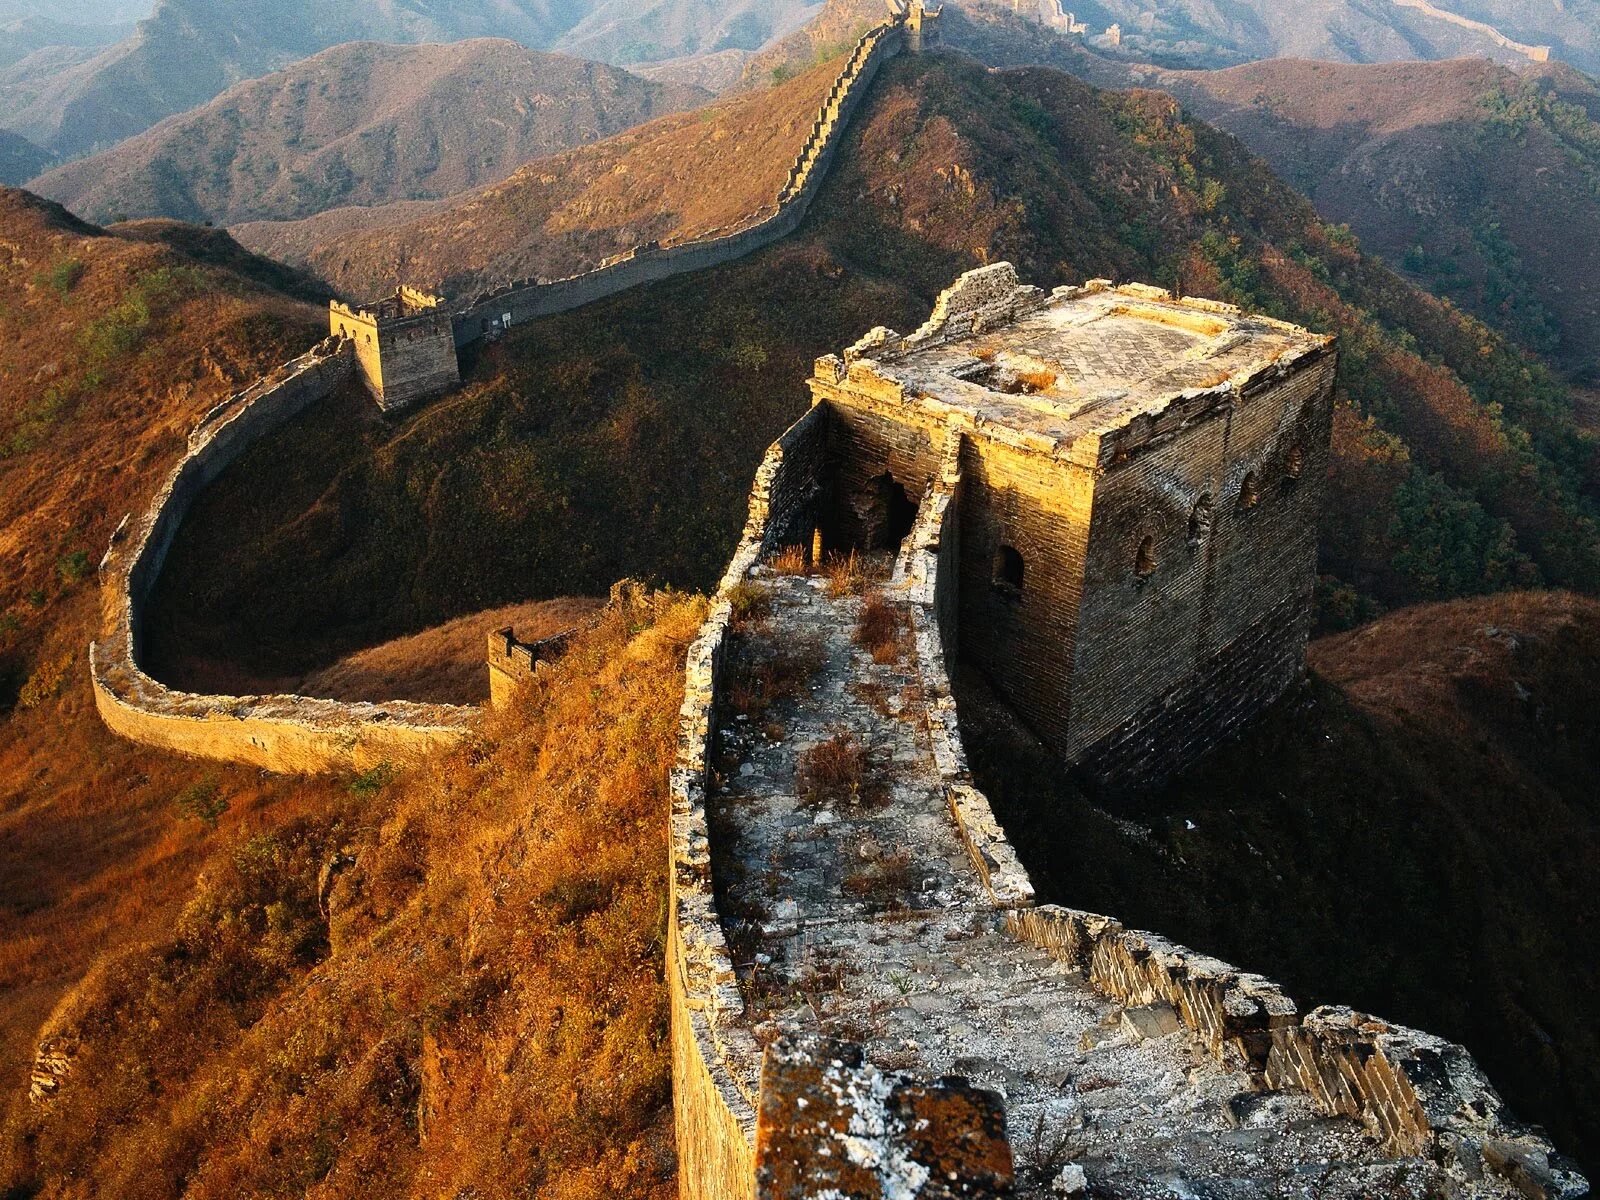 Края китайской стены. Великая китайская стена бойницы. Великая китайская стена цинхай. Башни и бойницы Великой китайской стены. Еликаякитайская стена.